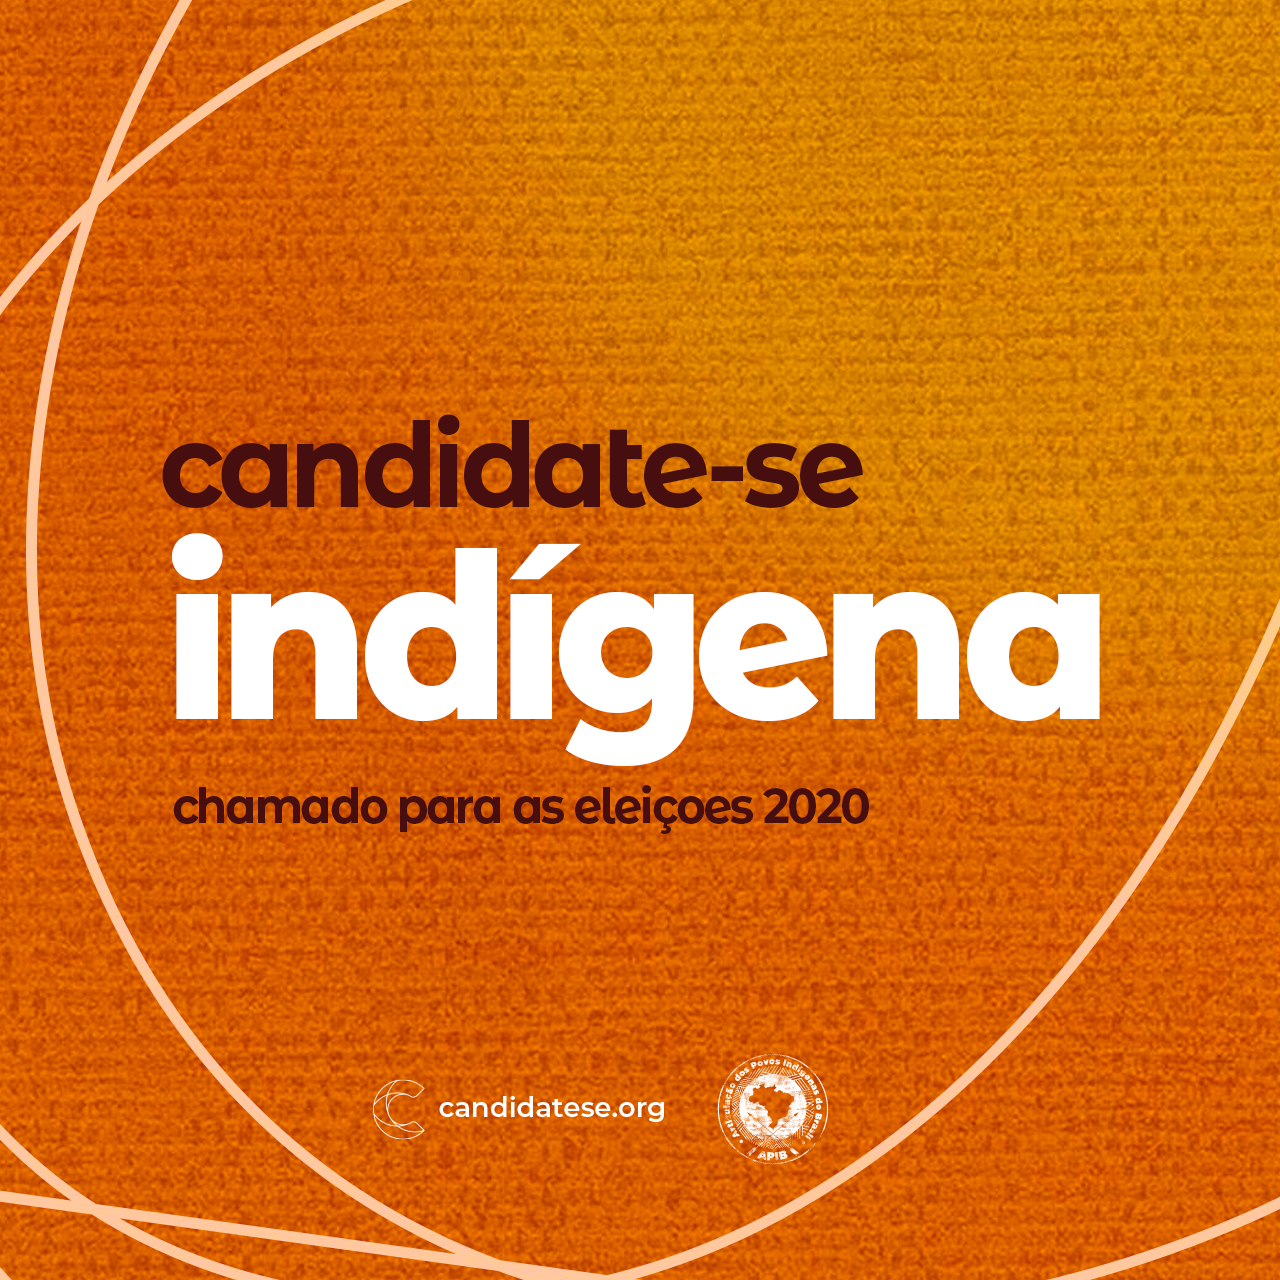 Candidate-se indígena: Chamado para as eleições 2020